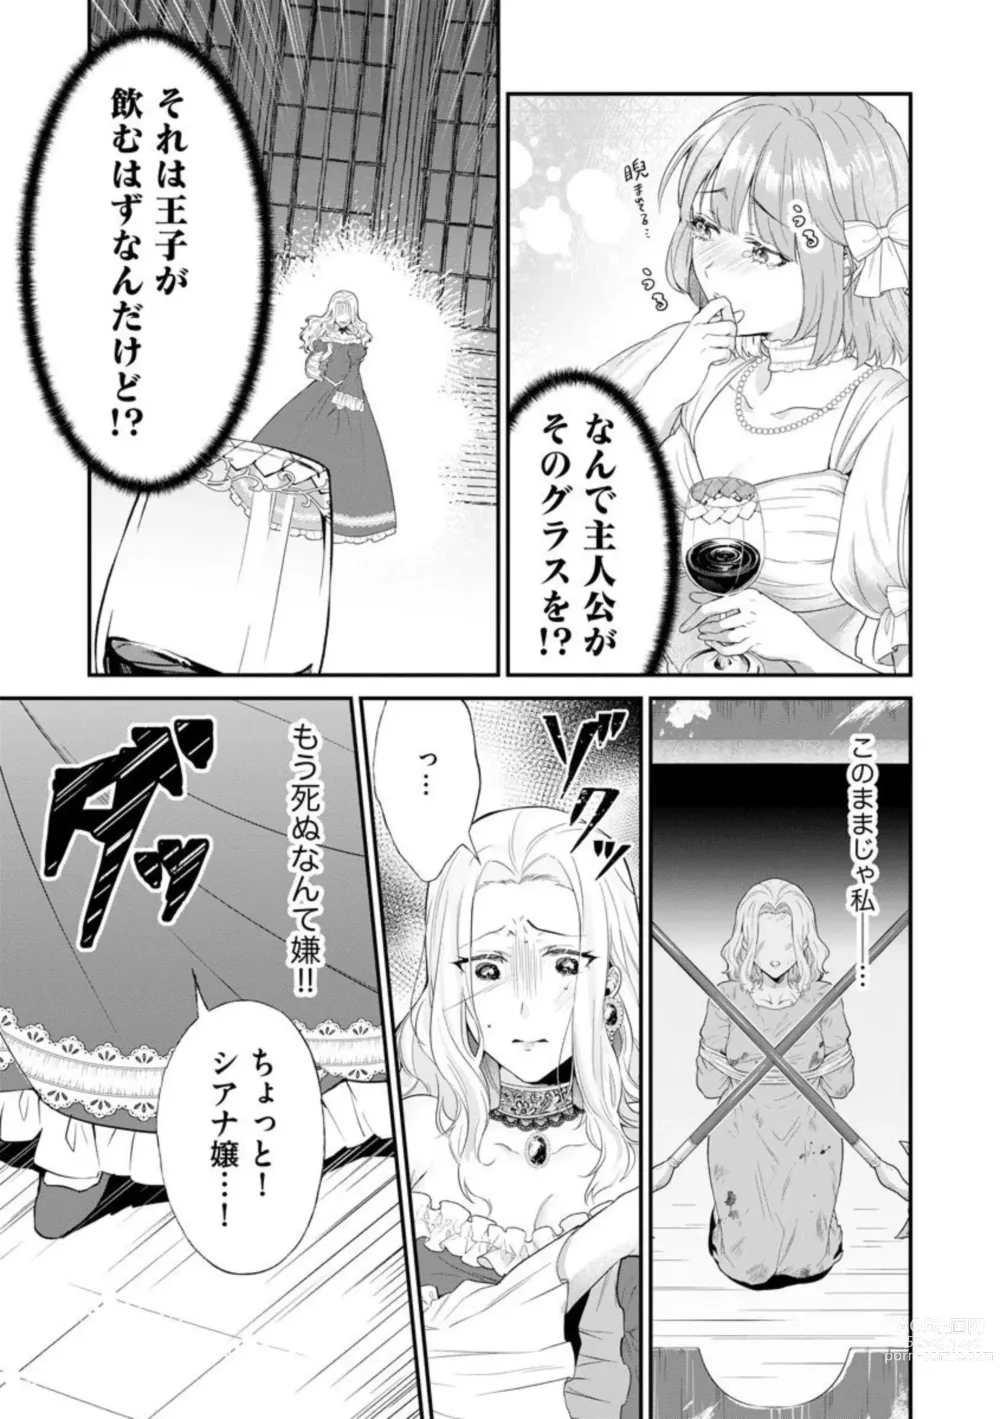 Page 9 of manga Kaibutsu Hakushaku no Amai Hana Akuyaku Reijou wa Bed de Midare Chiru 1